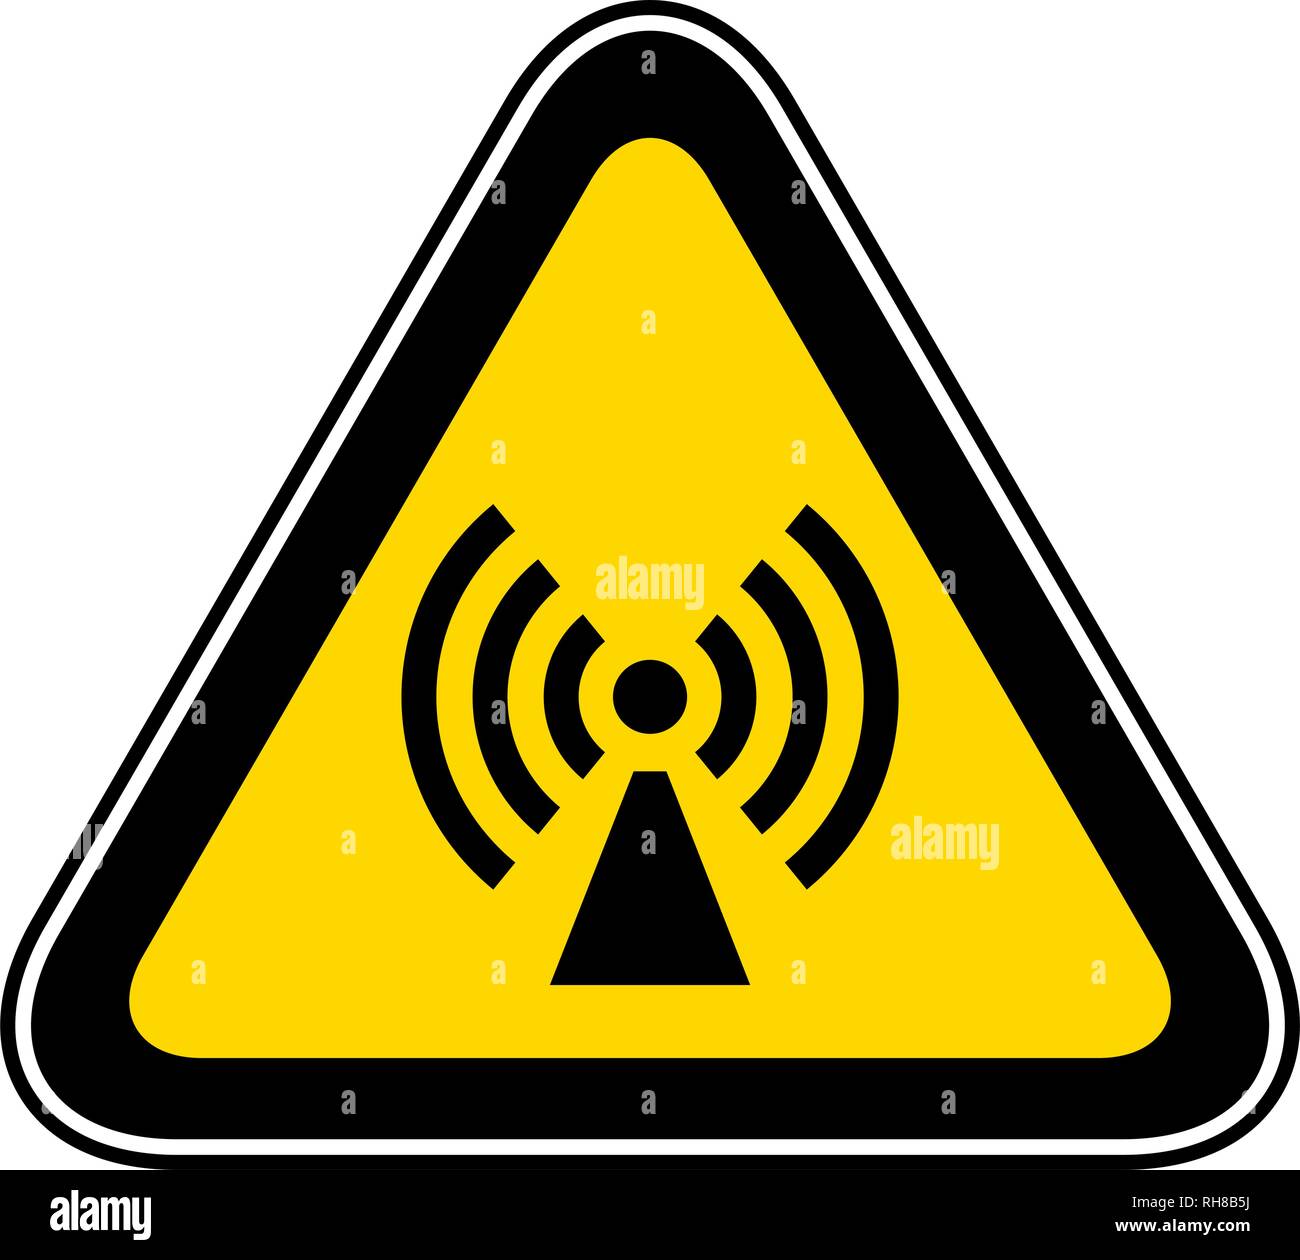 Triangular Warning Hazard Symbol Stock Vector